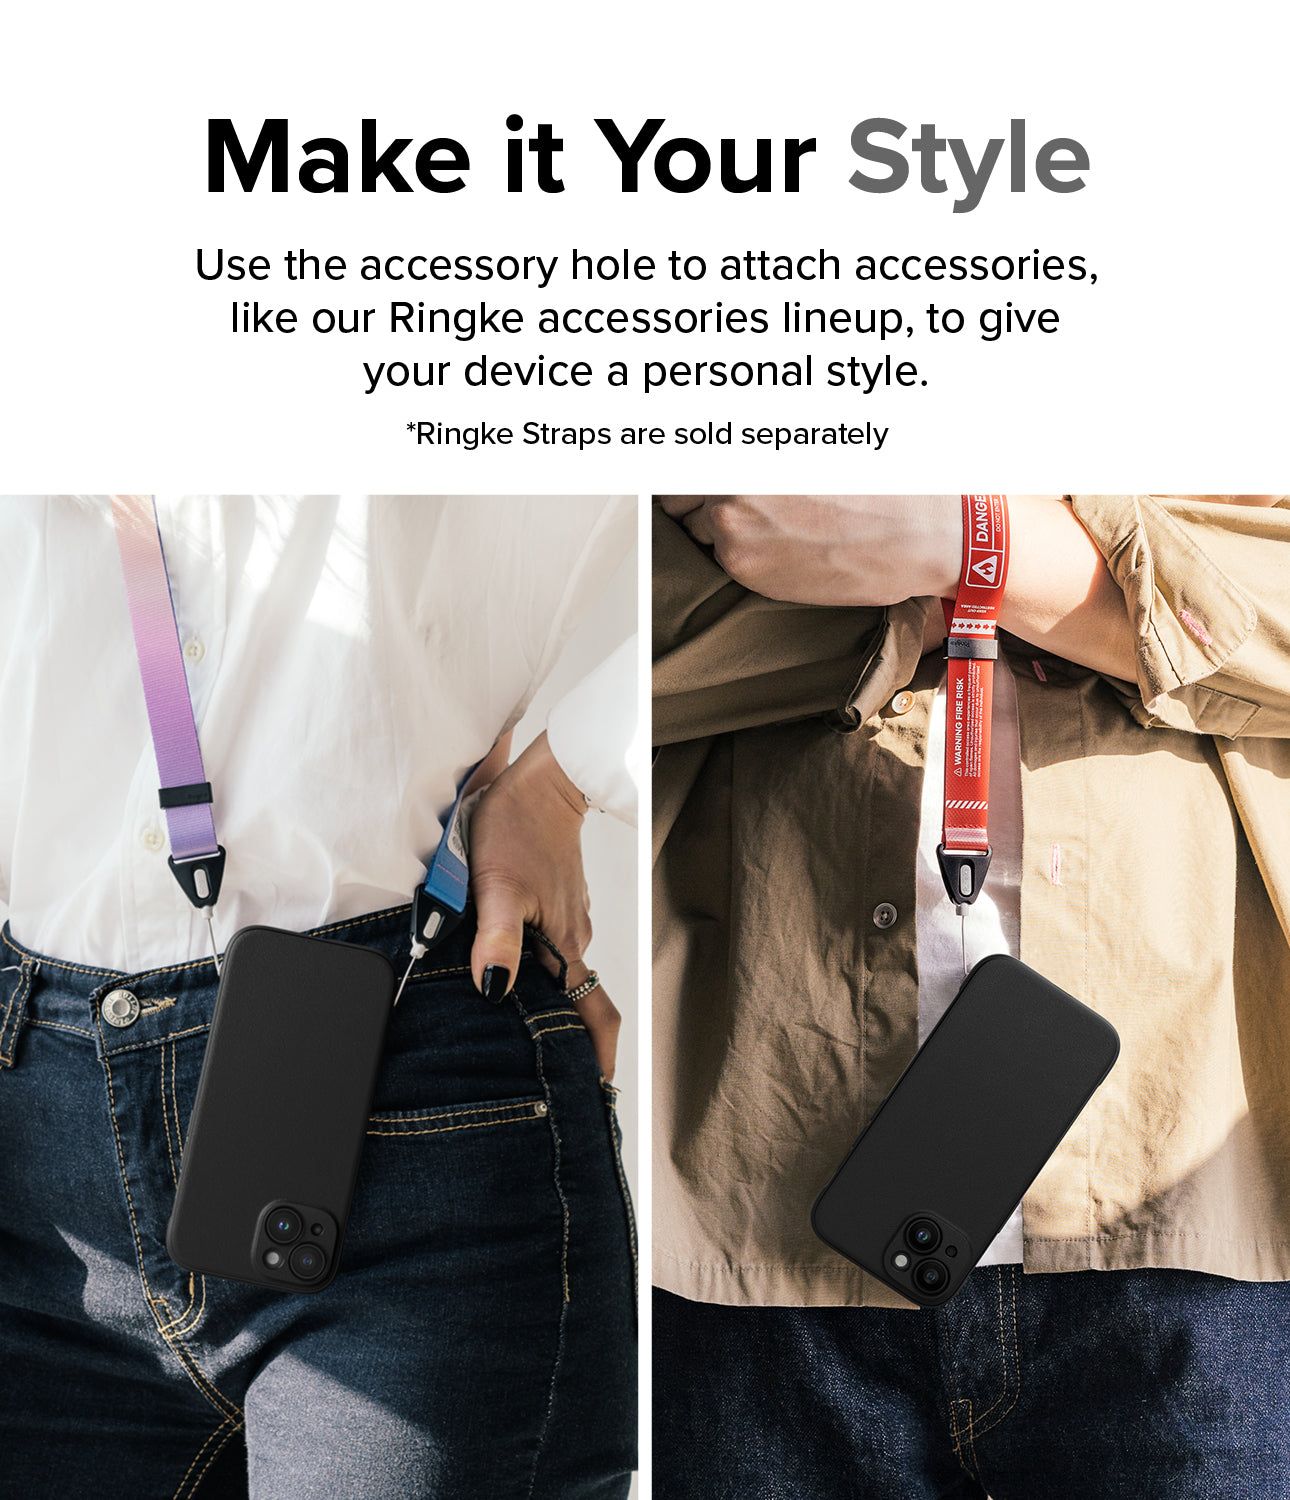 Ốp lưng iPhone 15 | Onyx - Đen / Xanh đậm - Hãy tạo nên phong cách của bạn. Sử dụng lỗ phụ kiện để gắn các phụ kiện, chẳng hạn như dòng phụ kiện Ringke của chúng tôi, nhằm tạo phong cách cá nhân cho thiết bị của bạn.